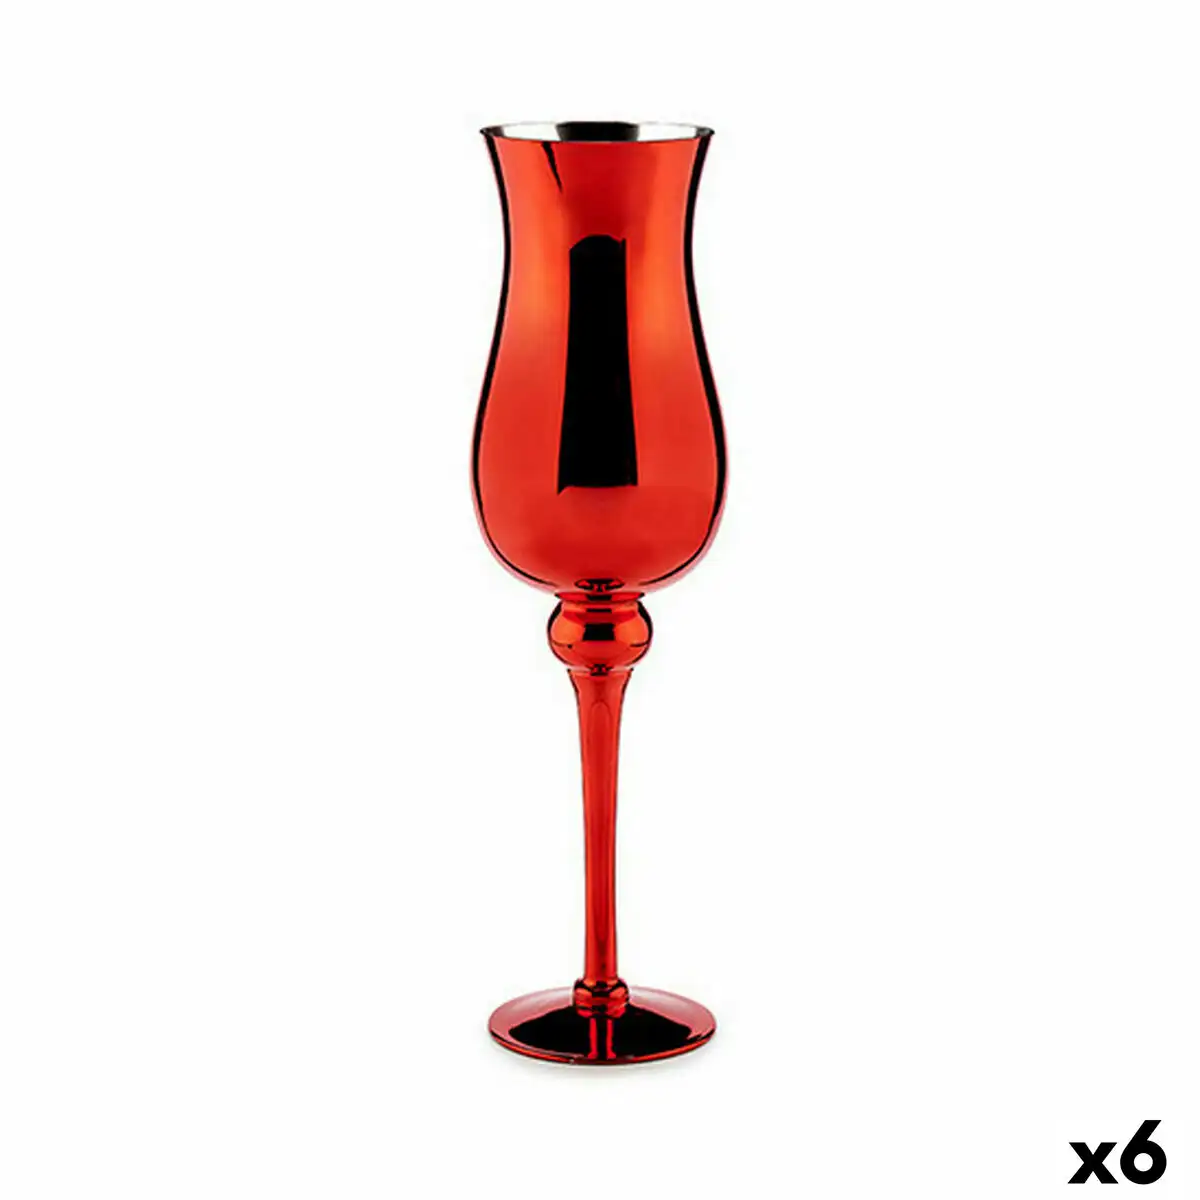 Bougeoir verre rouge 13 5 x 4 5 x 13 5 cm 6 unites _1503. DIAYTAR SENEGAL - Votre Destination Shopping de Choix. Explorez notre boutique en ligne et découvrez des trésors qui reflètent votre style et votre passion pour l'authenticité.